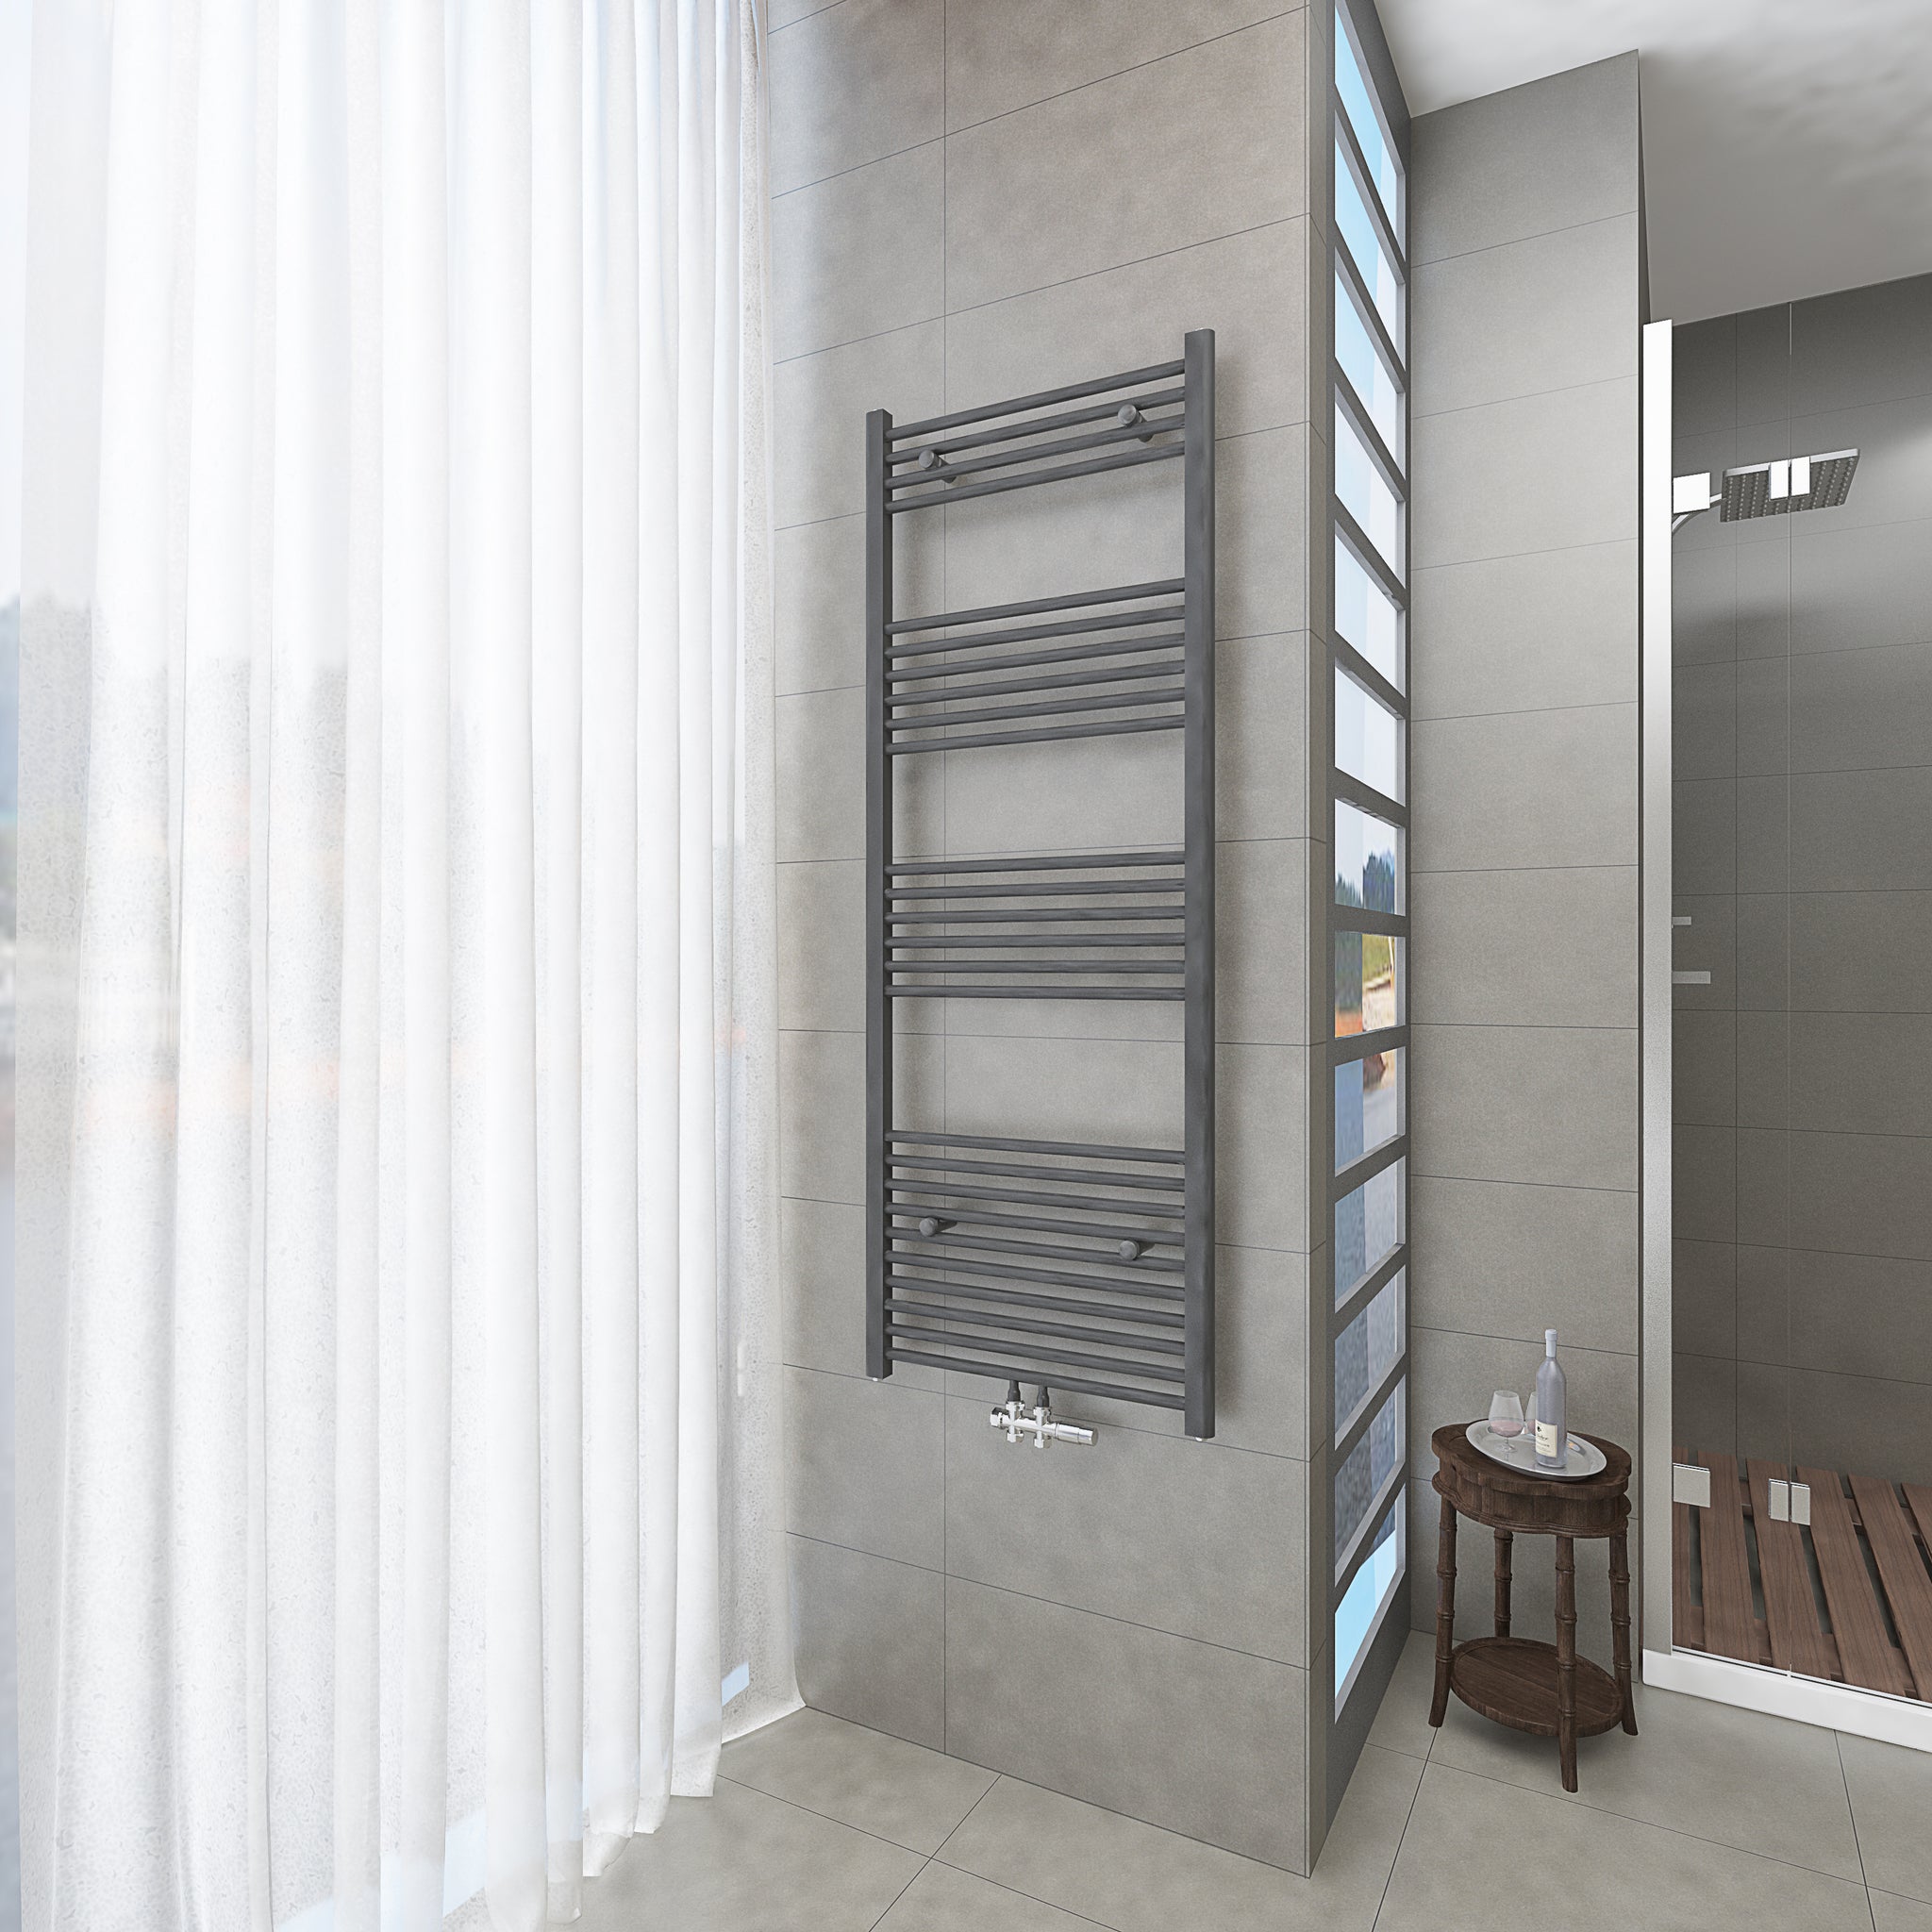 Badheizkörper Grau/Anthrazit - 160x60 CM Heizkörper und Handtuchtrockner in einem - Mittelanschluss - Rauchfreie Kohleheizung für das Badezimmer